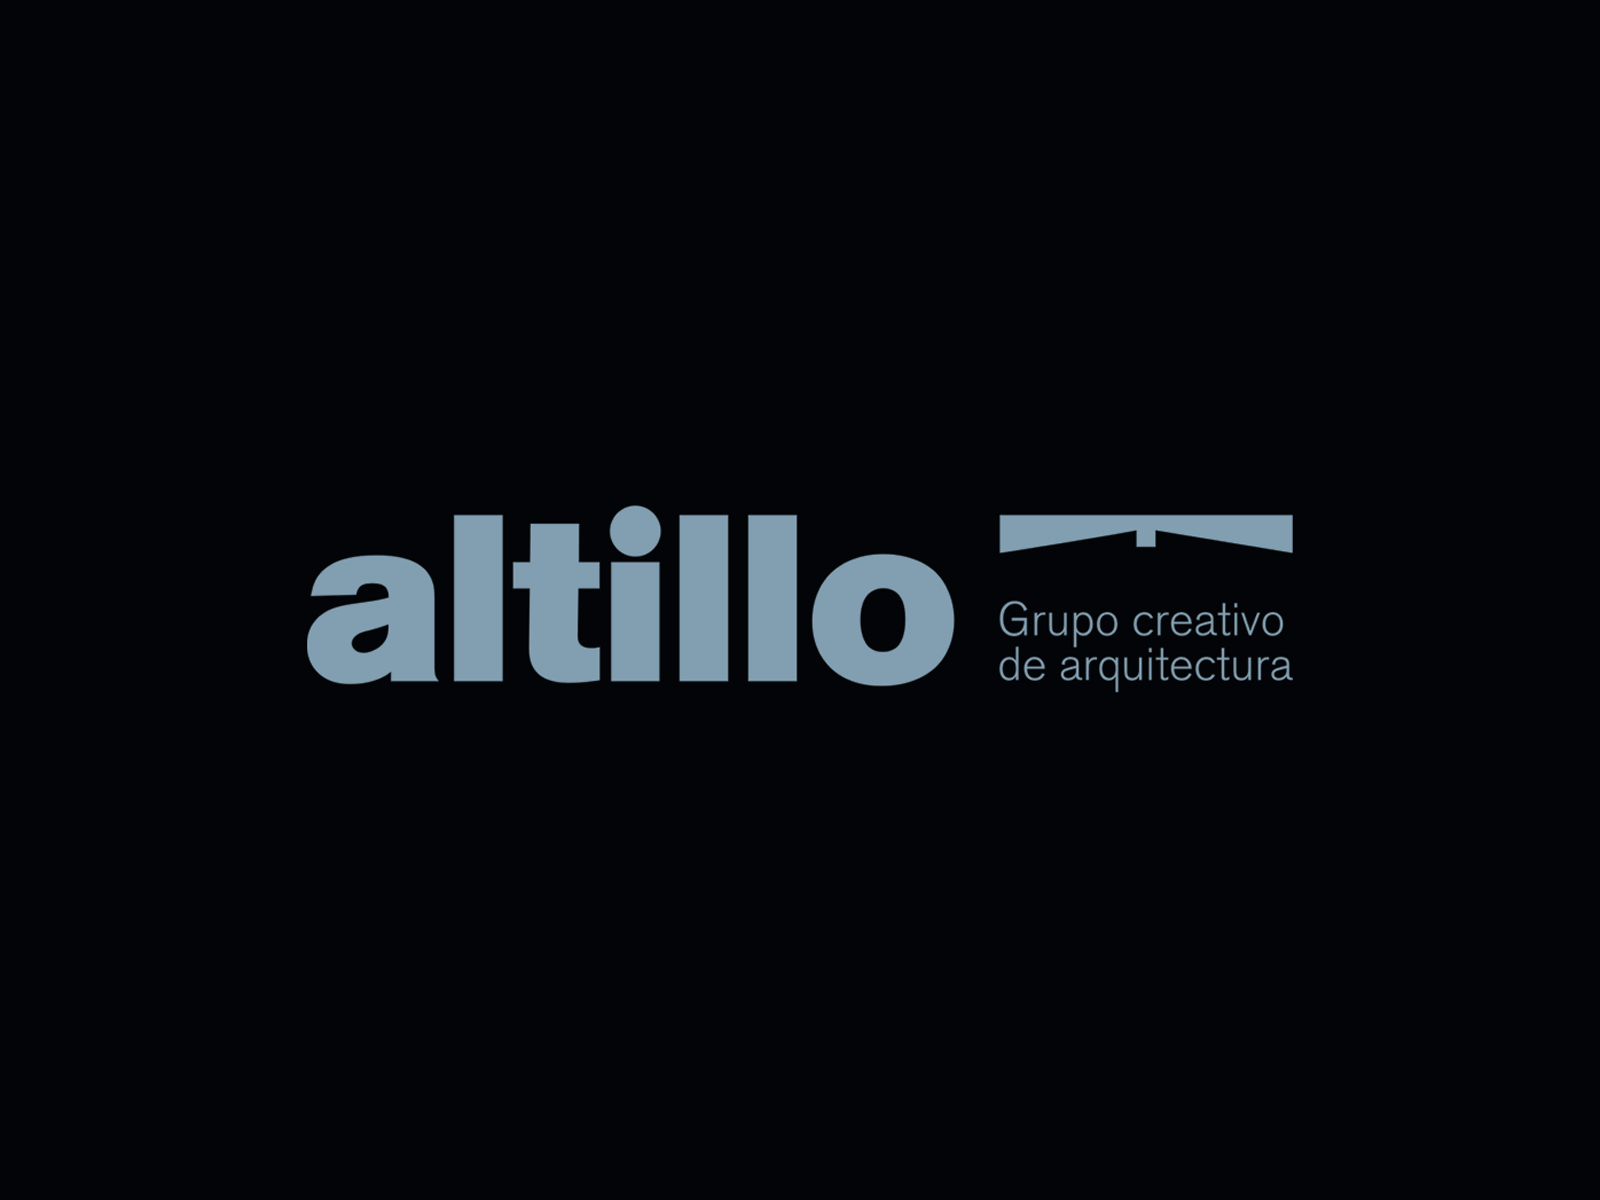 Visual Identity Design for Altillo